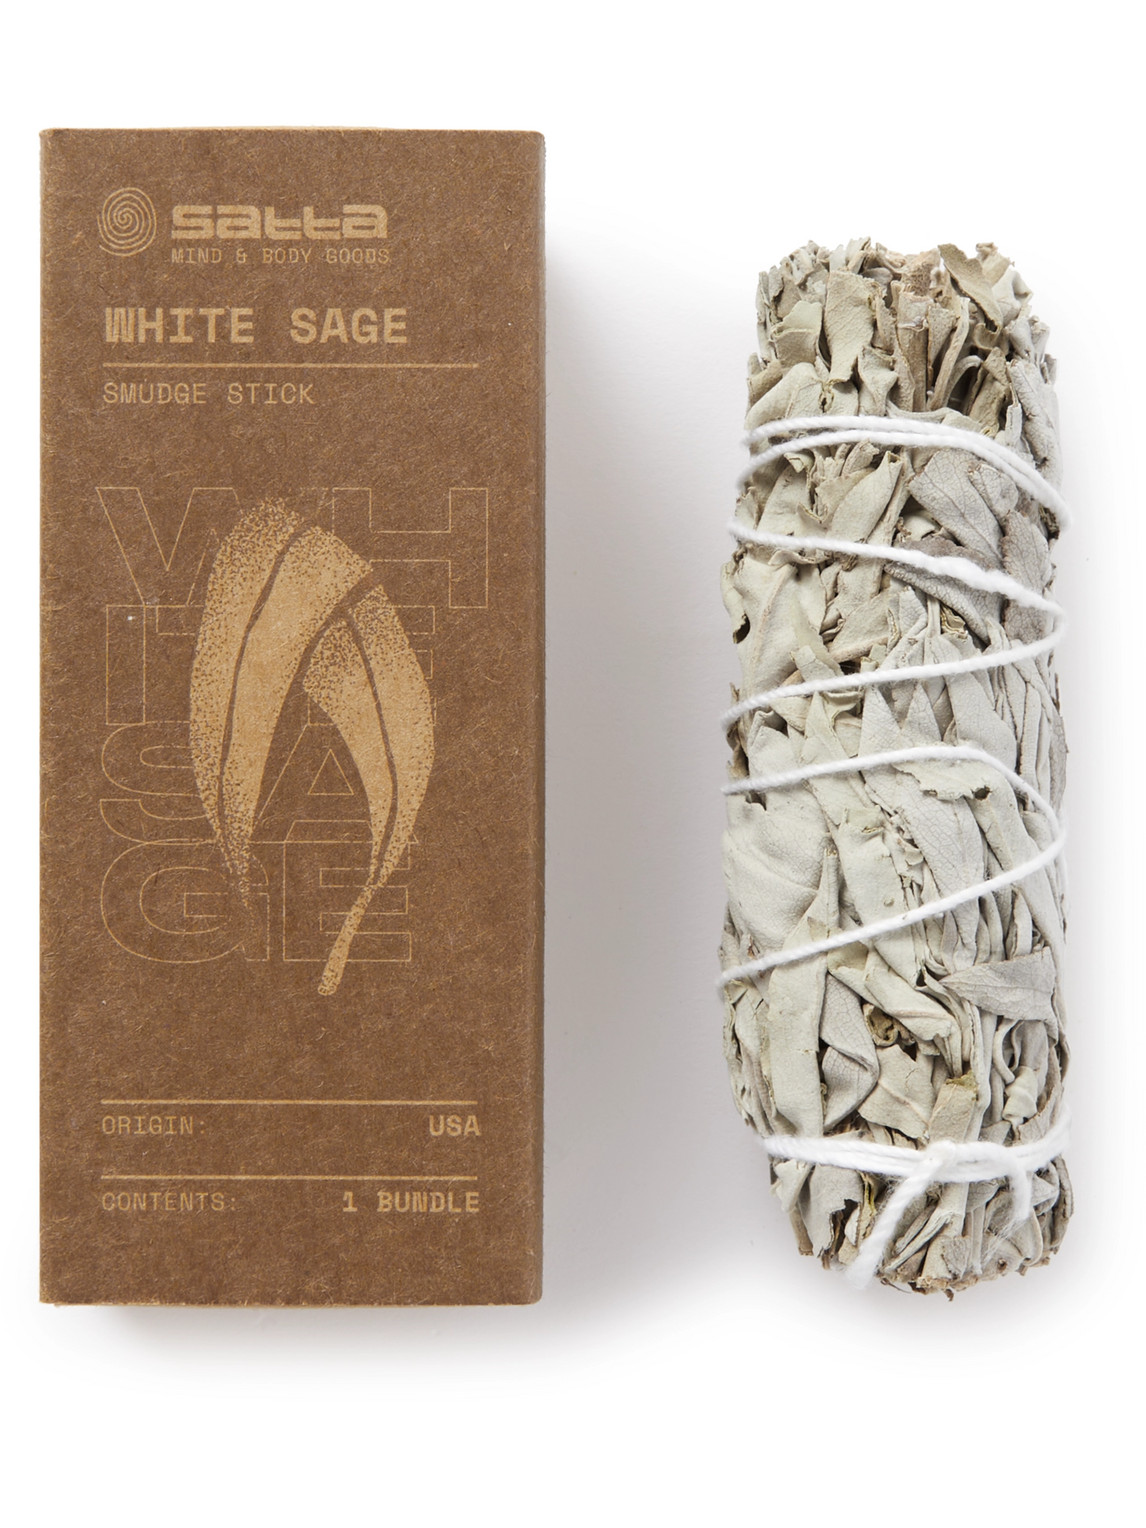 Satta White Sage Smudge Stick In Neutrals